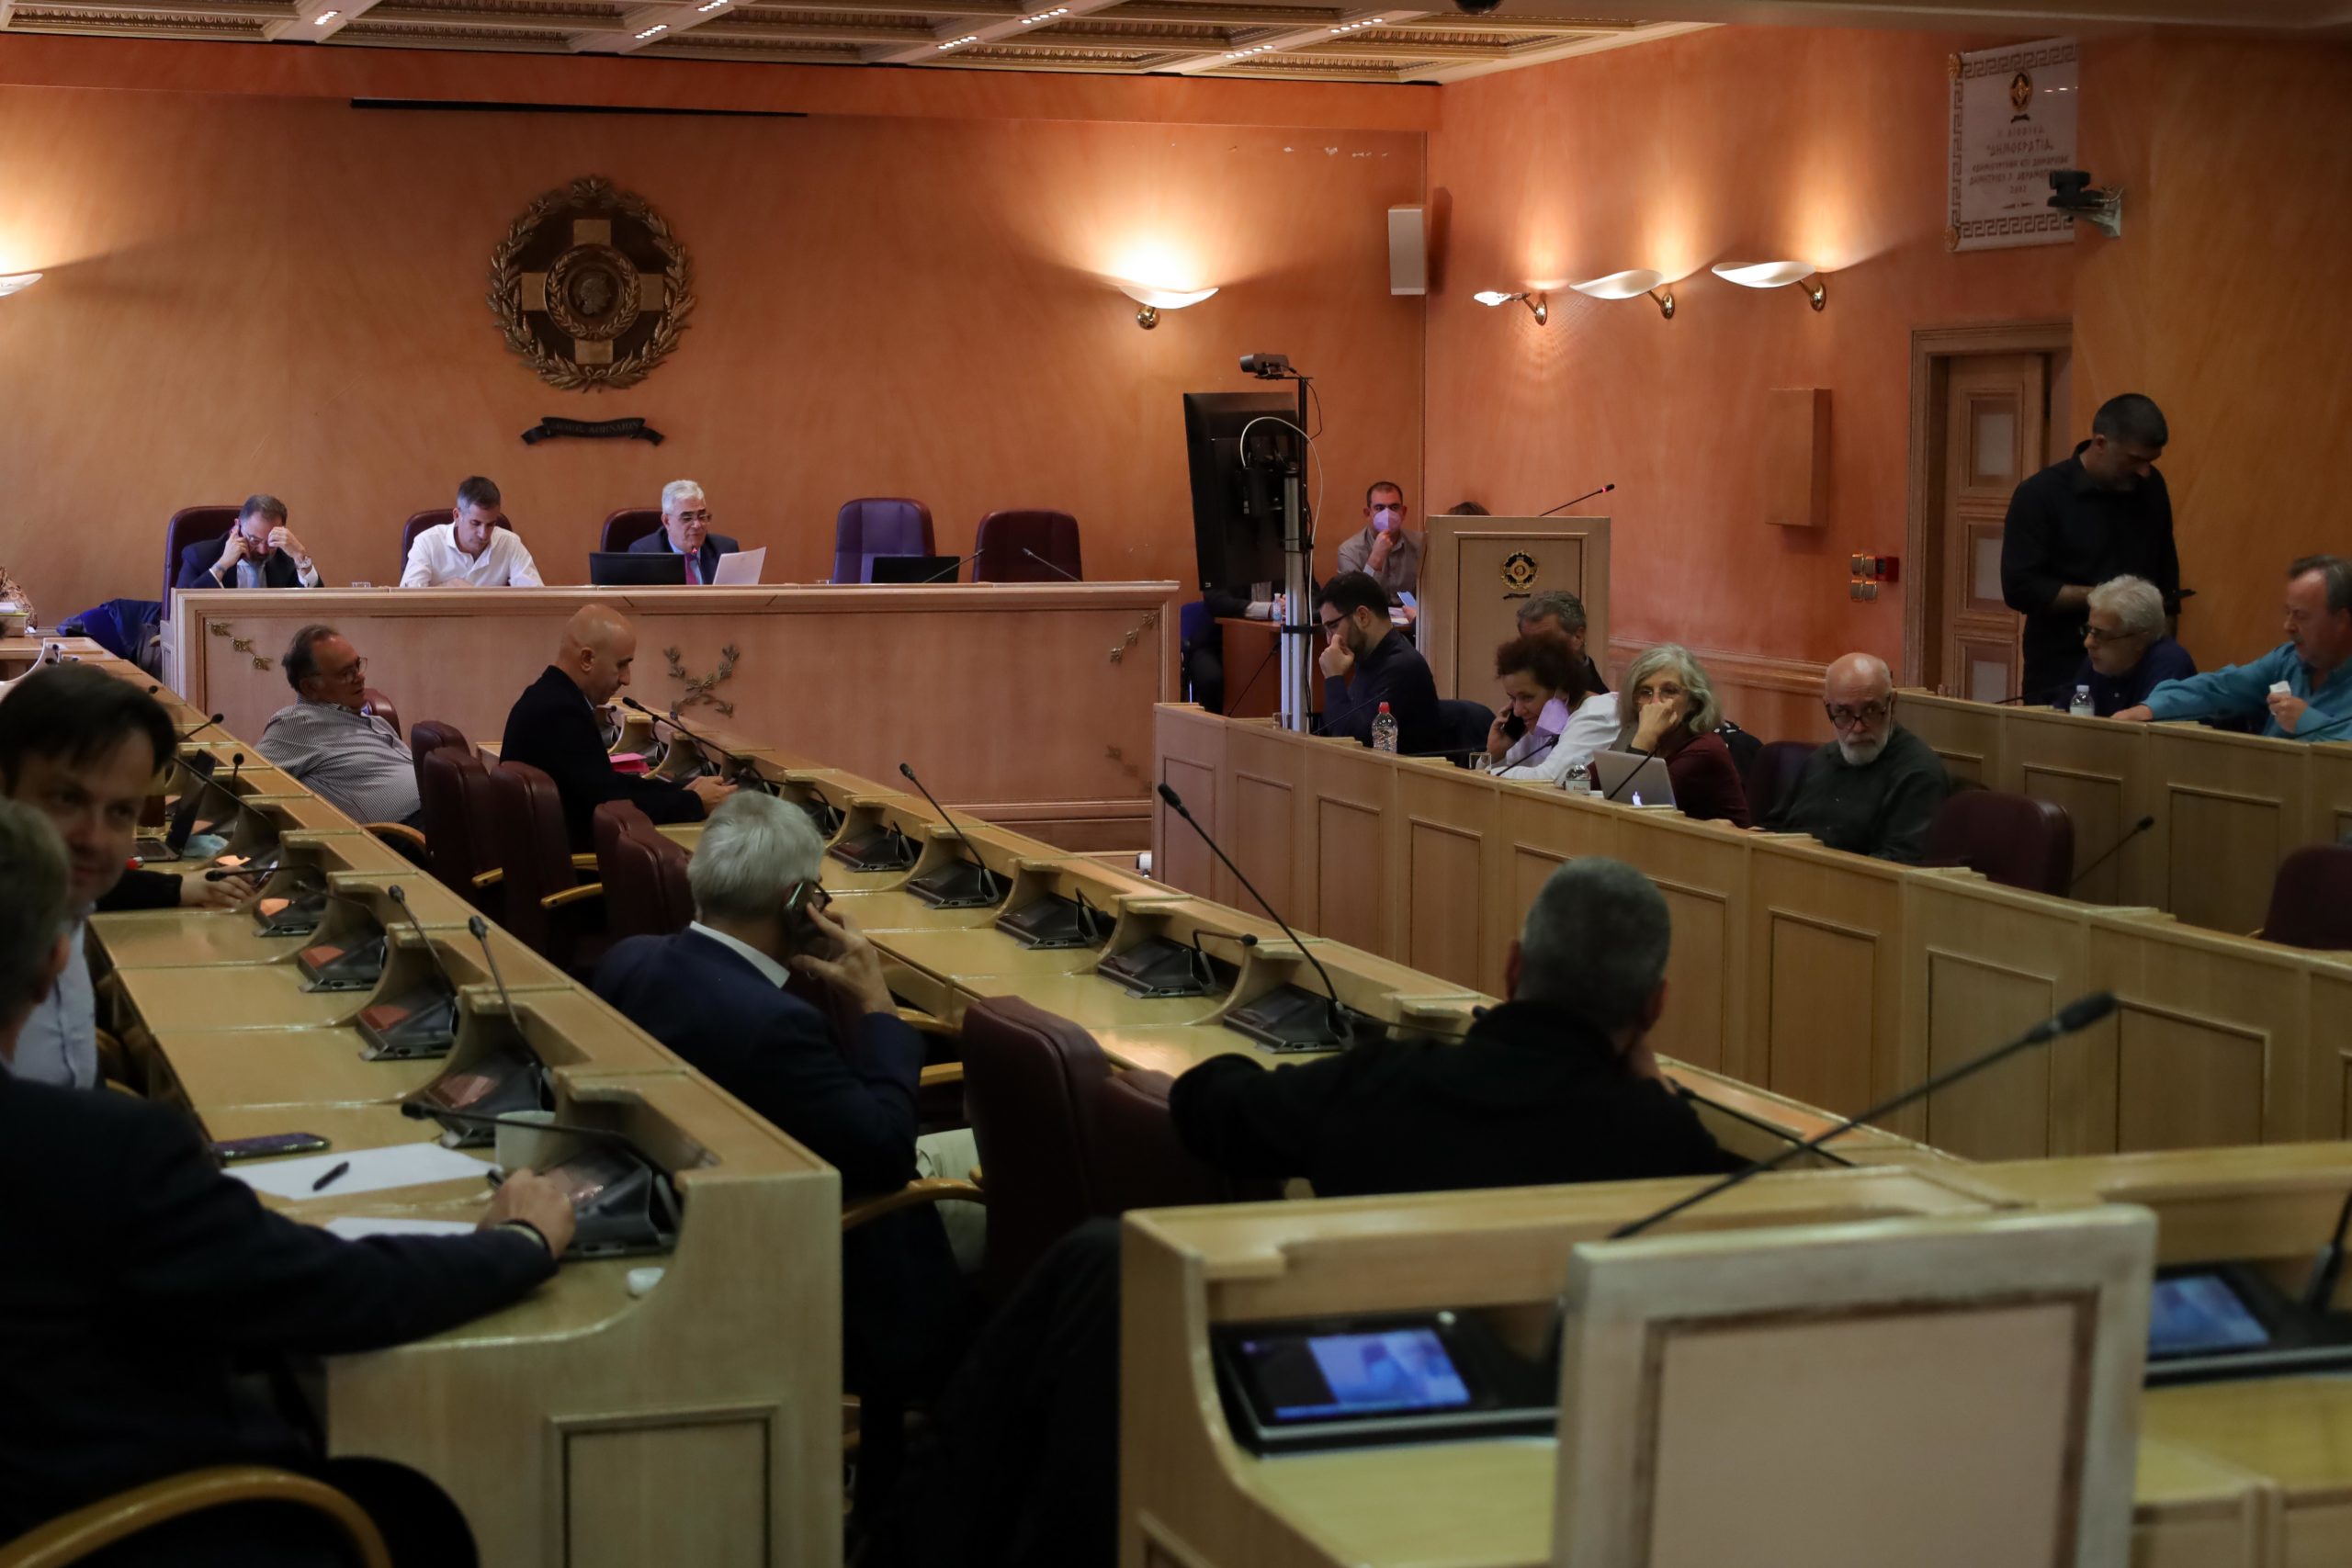 Απαγόρευση της φορτοεκφόρτωσης από τις 9 το πρωί έως τις 9 το βράδυ ζητεί το δημοτικό συμβούλιο της Αθήνας